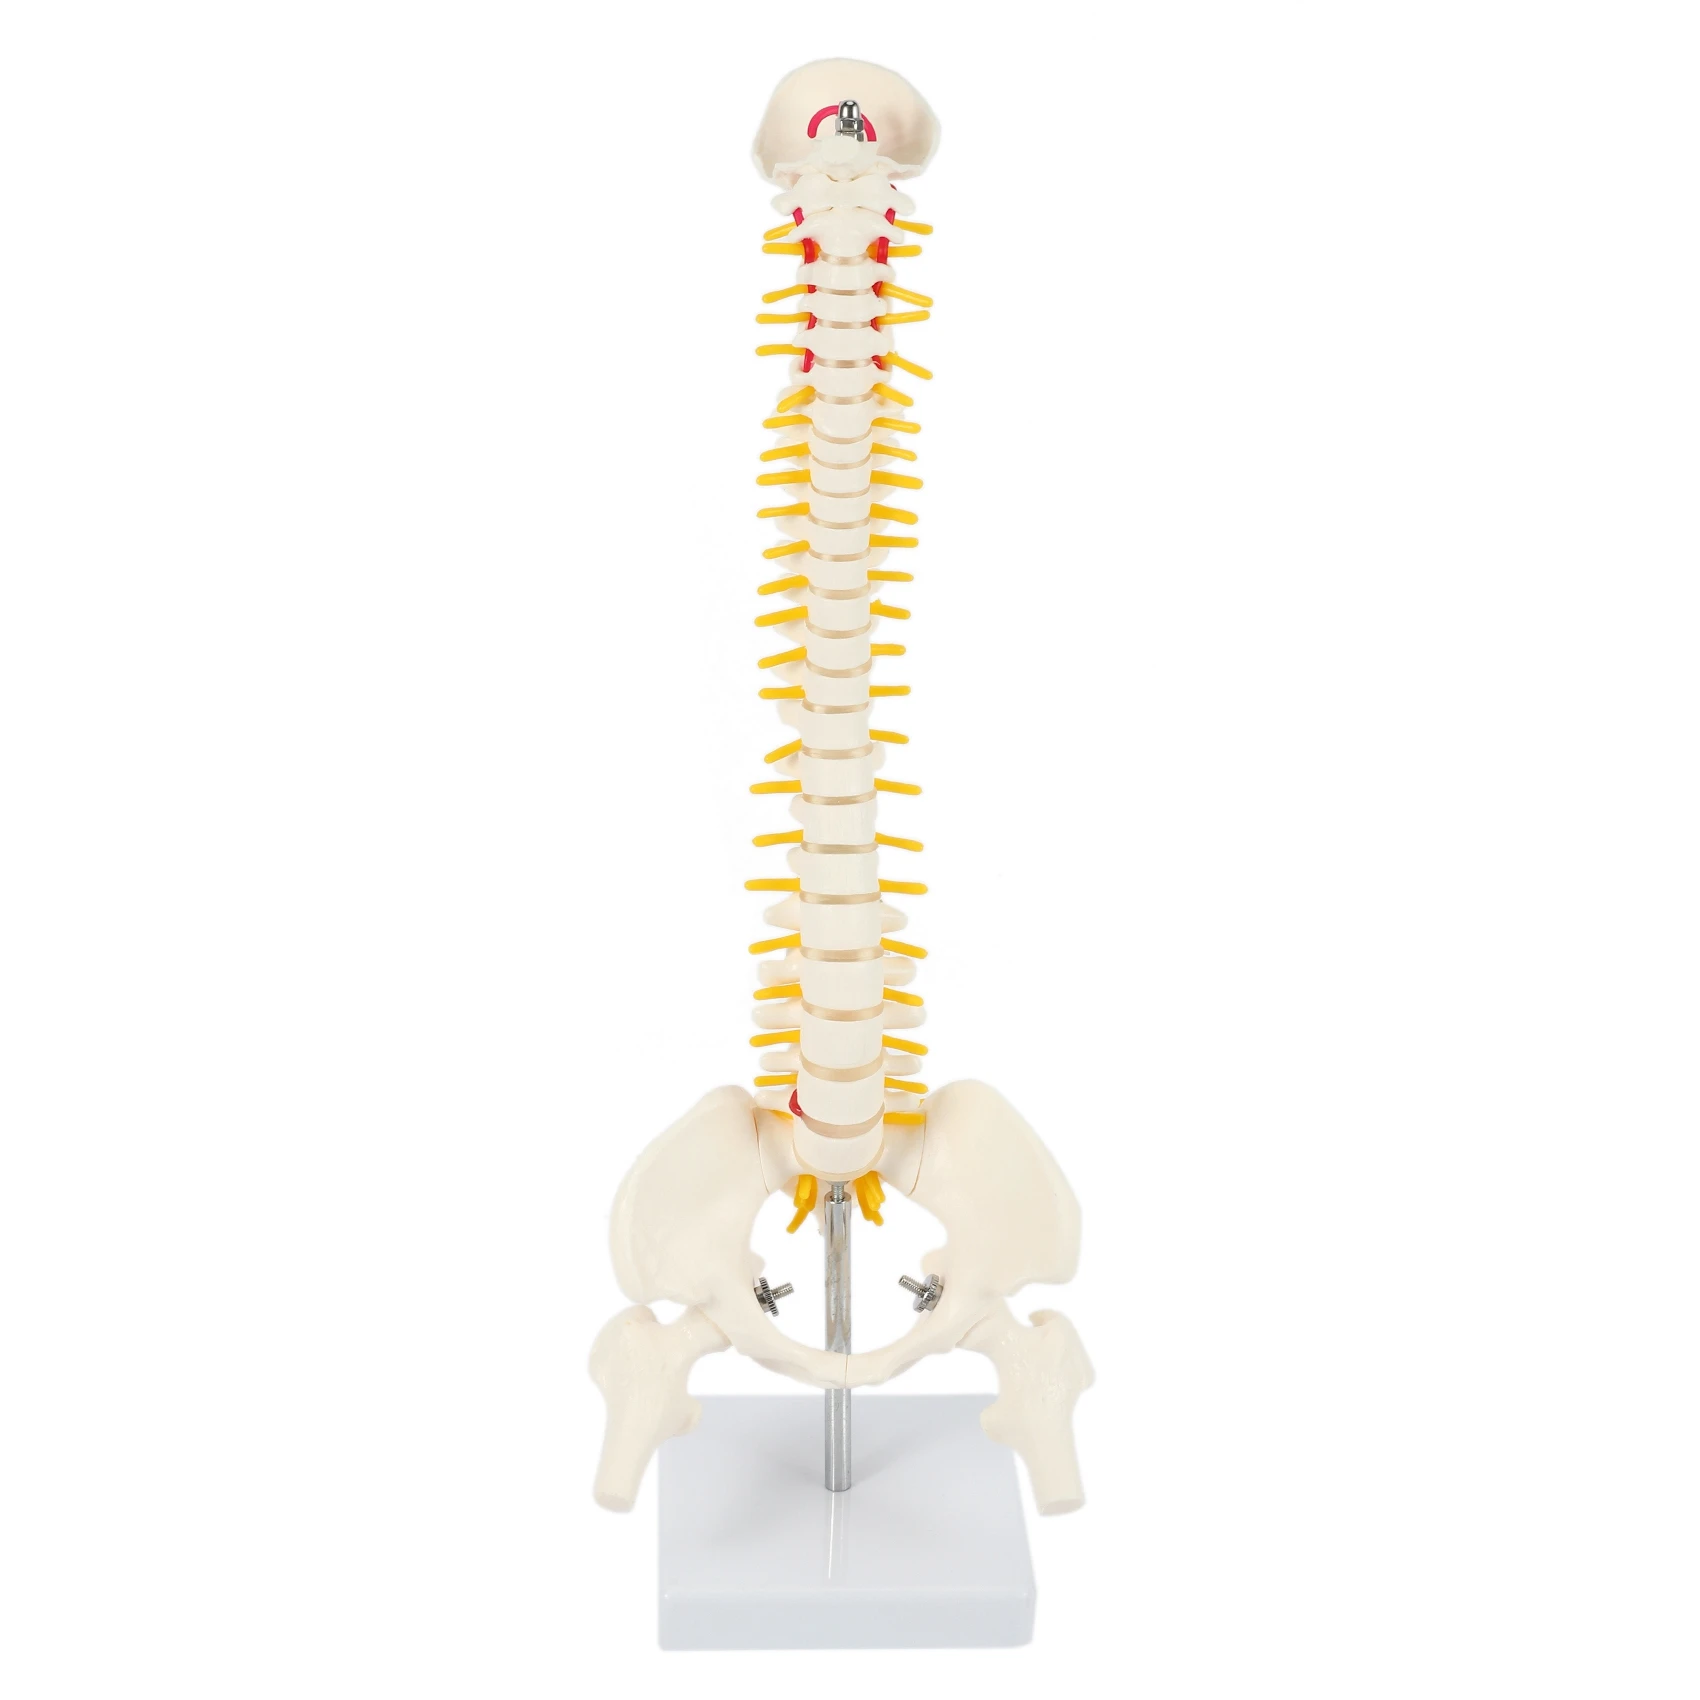 45 см Гибкая модель поясничного изгиба для взрослых 1: 1, модель скелета человека с позвоночным диском, модель таза, используемая для массажа, йоги